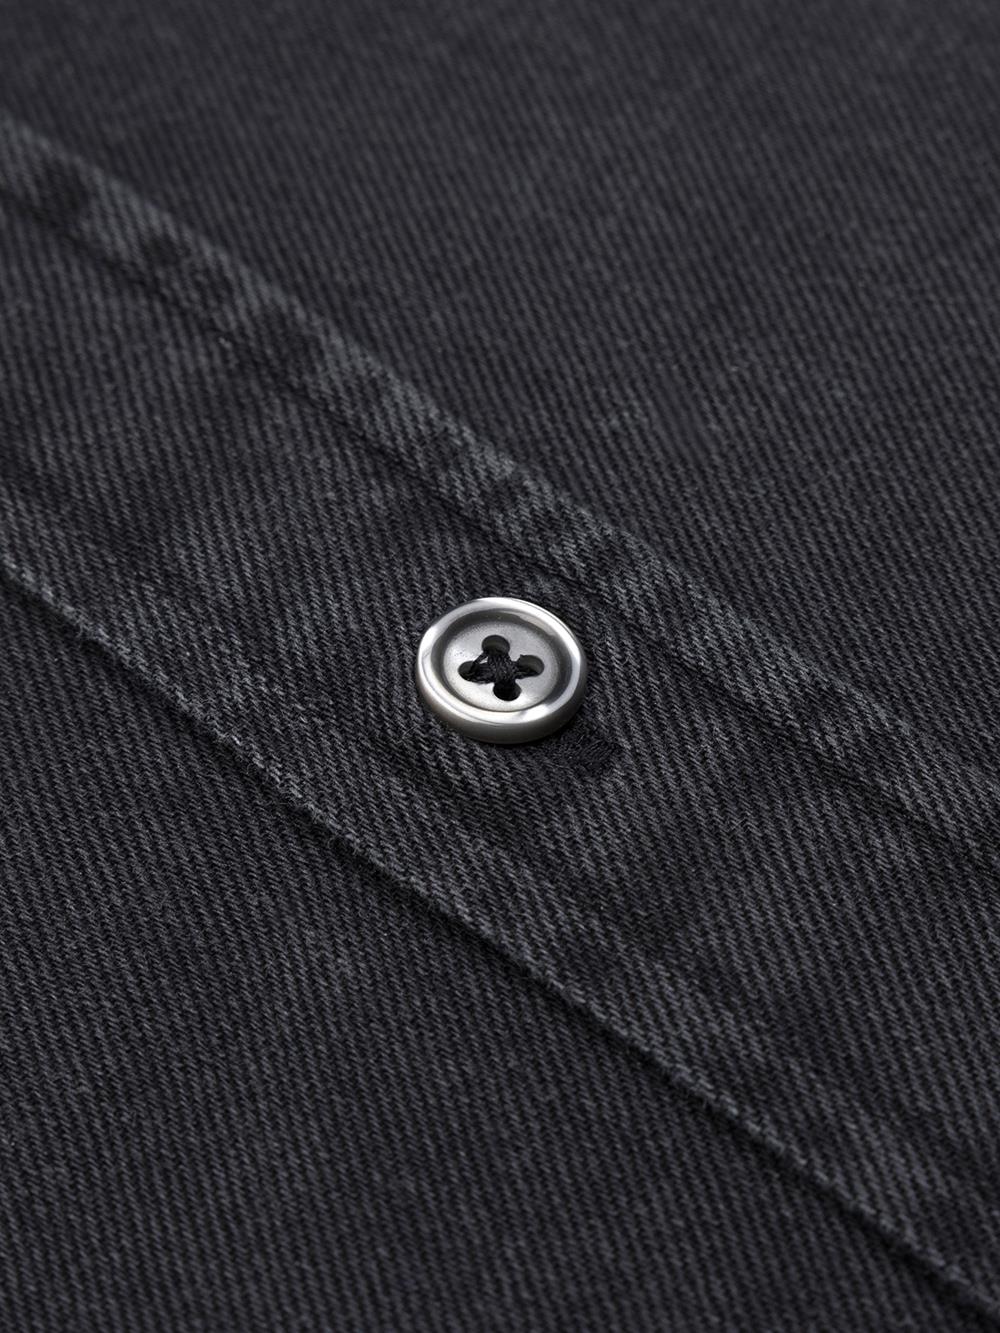 Gustavs Taillierthemd aus schwarzem Jeansstoff - Button down kragen